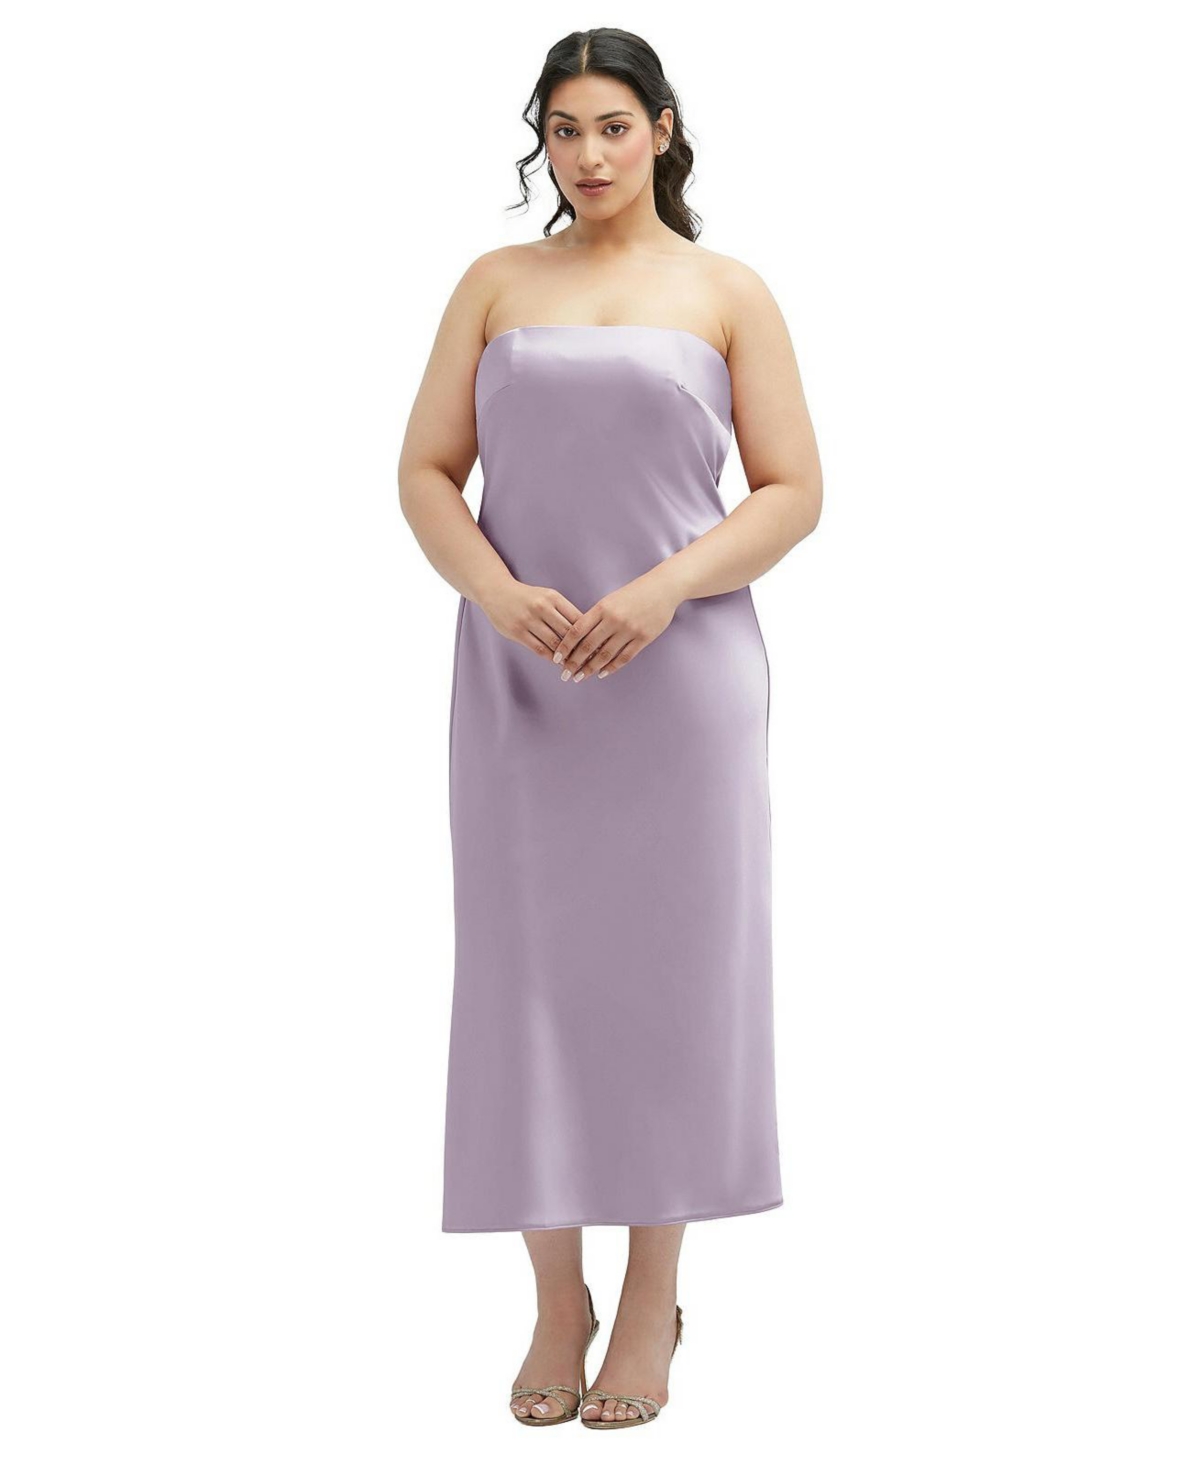 Women's Strapless Midi Bias Column Dress with Peek-a-Boo Corset Back - Lilac haze